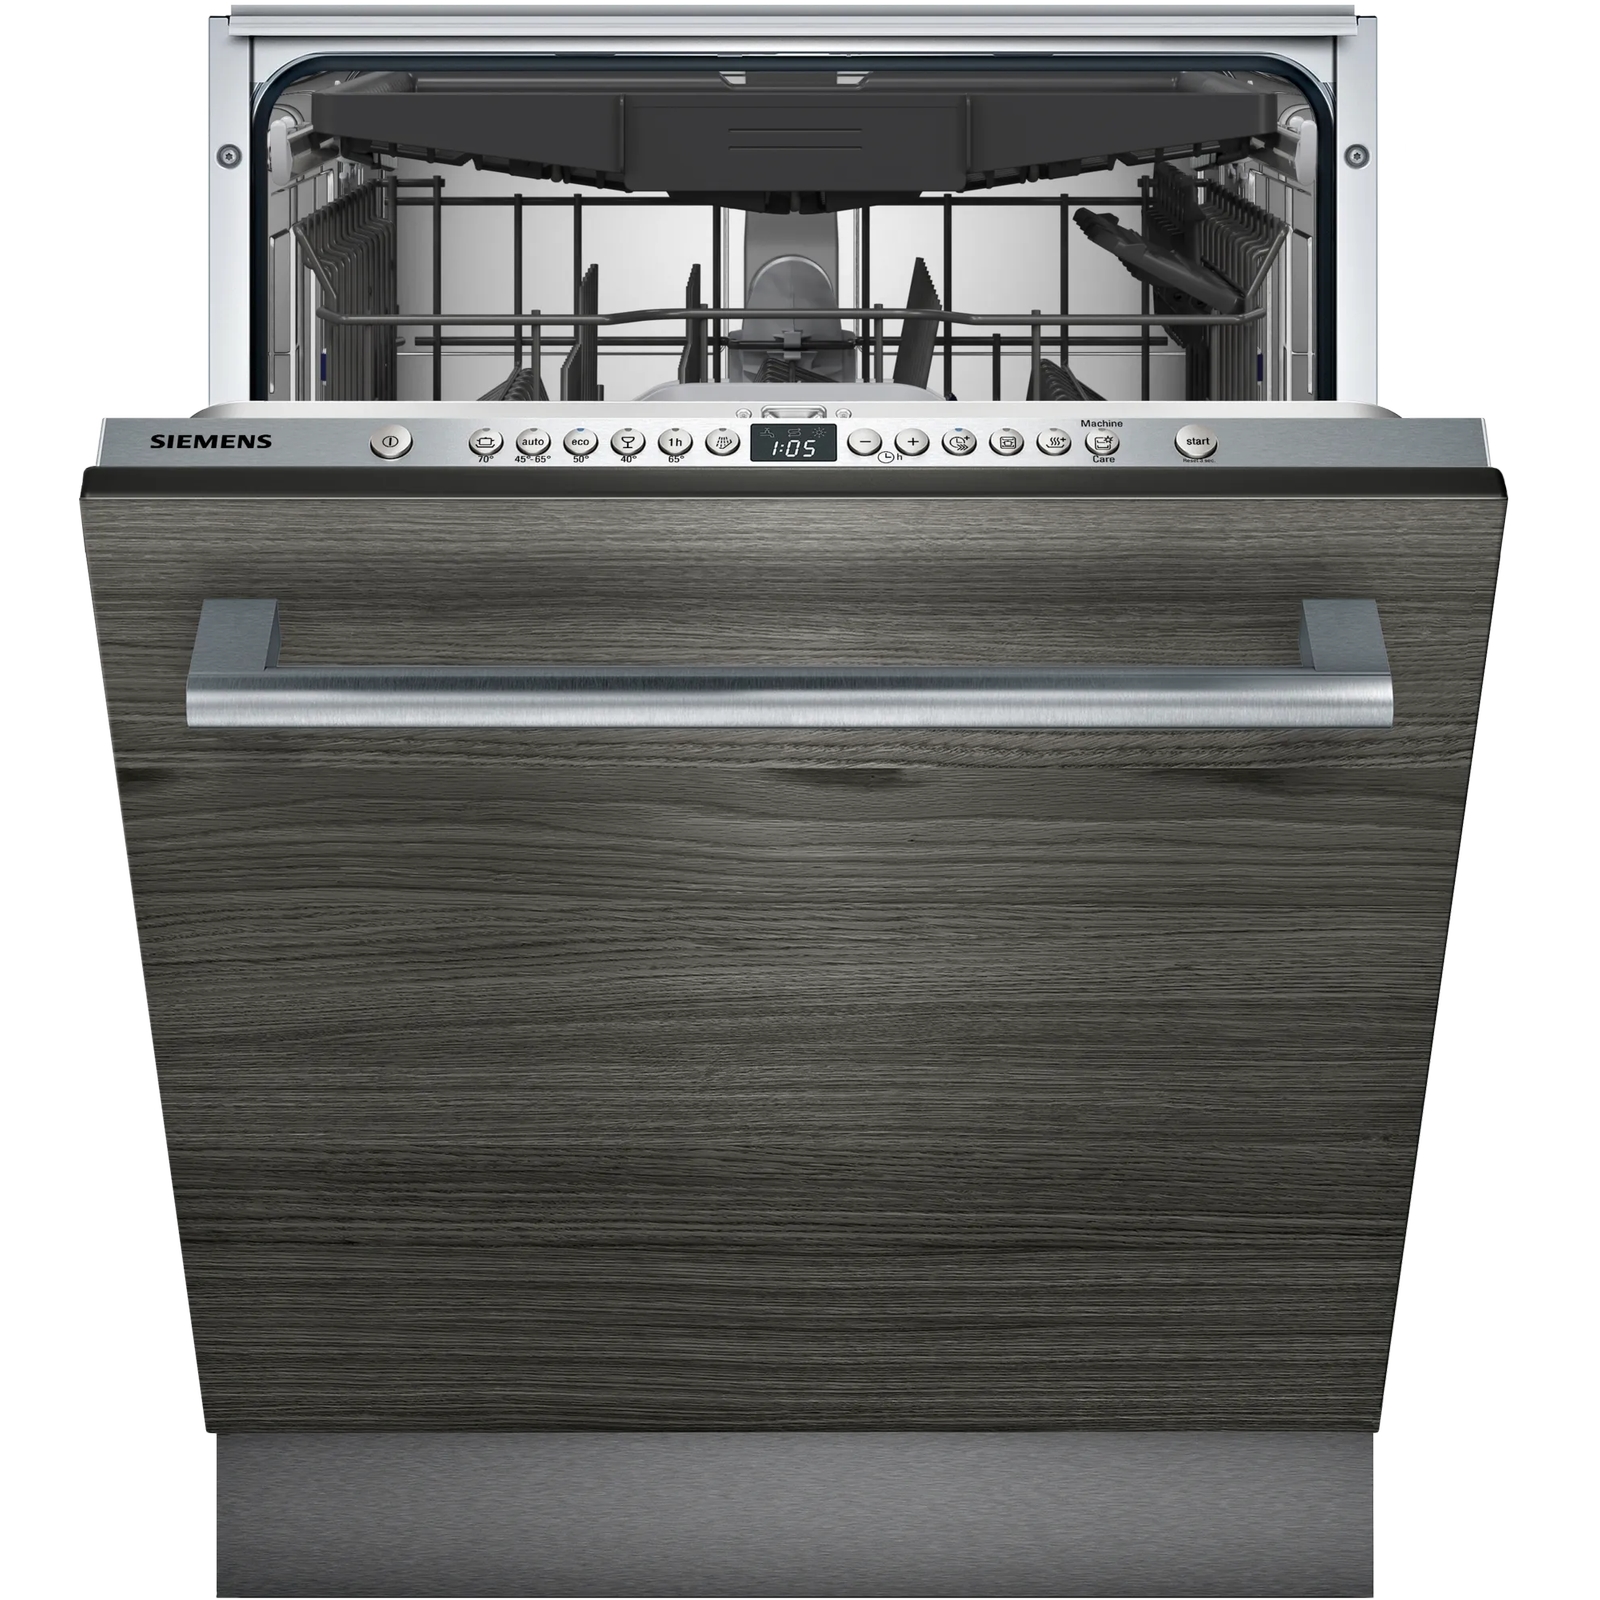 Встраиваемая посудомоечная машина Siemens SN636X06KE встраиваемая посудомоечная машина siemens sn63hx26mm